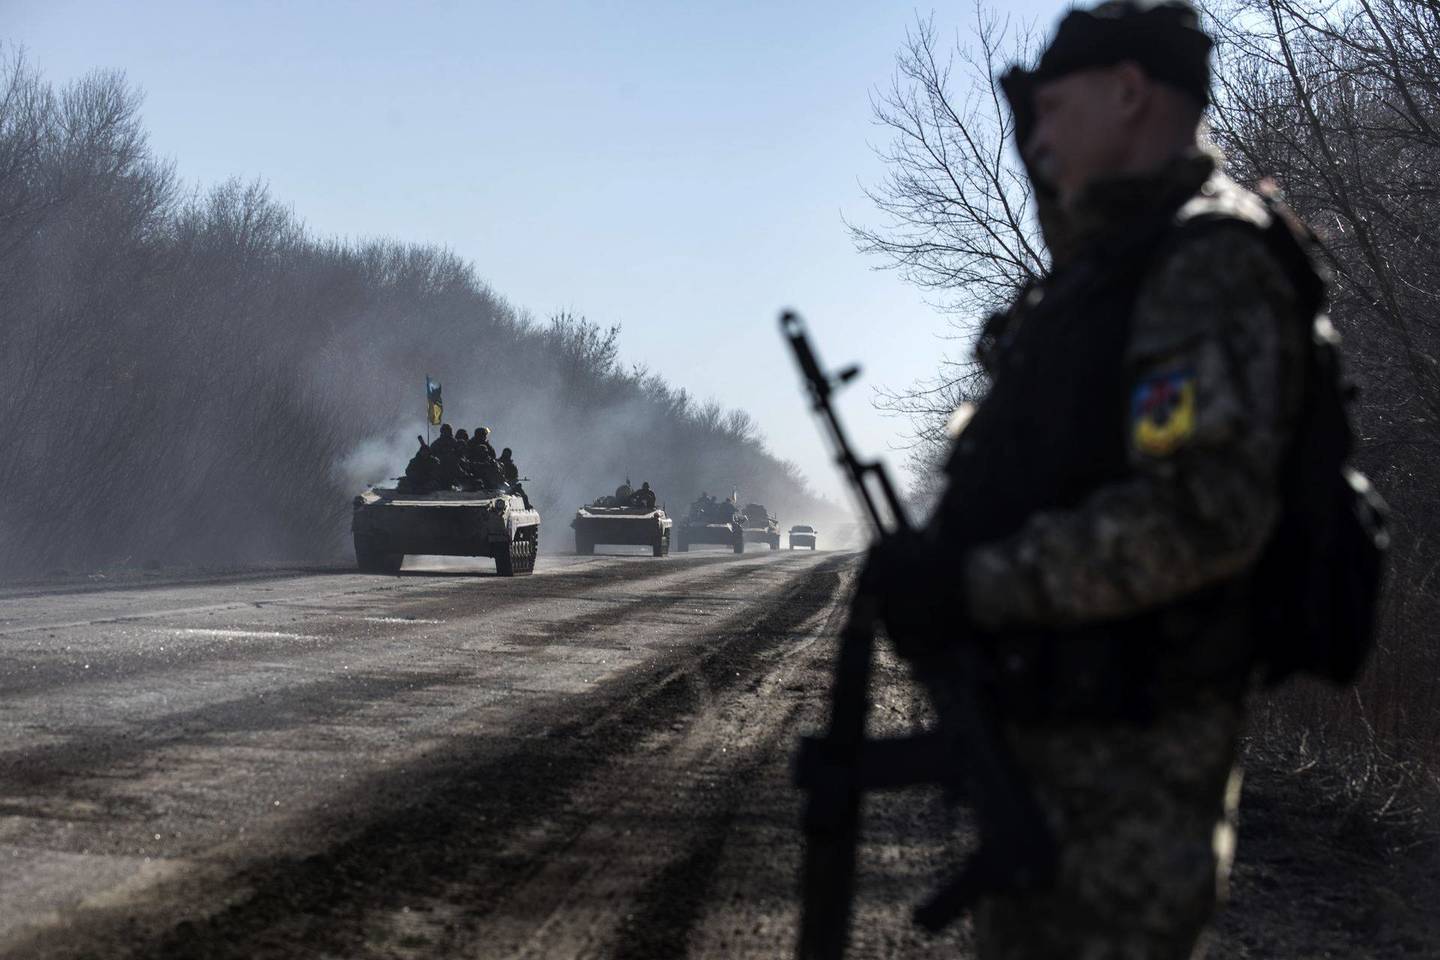 Kasetinių bombų naudojimu kaltinami tiek ukrainiečiai, tiek separatistai.<br>AP nuotr.